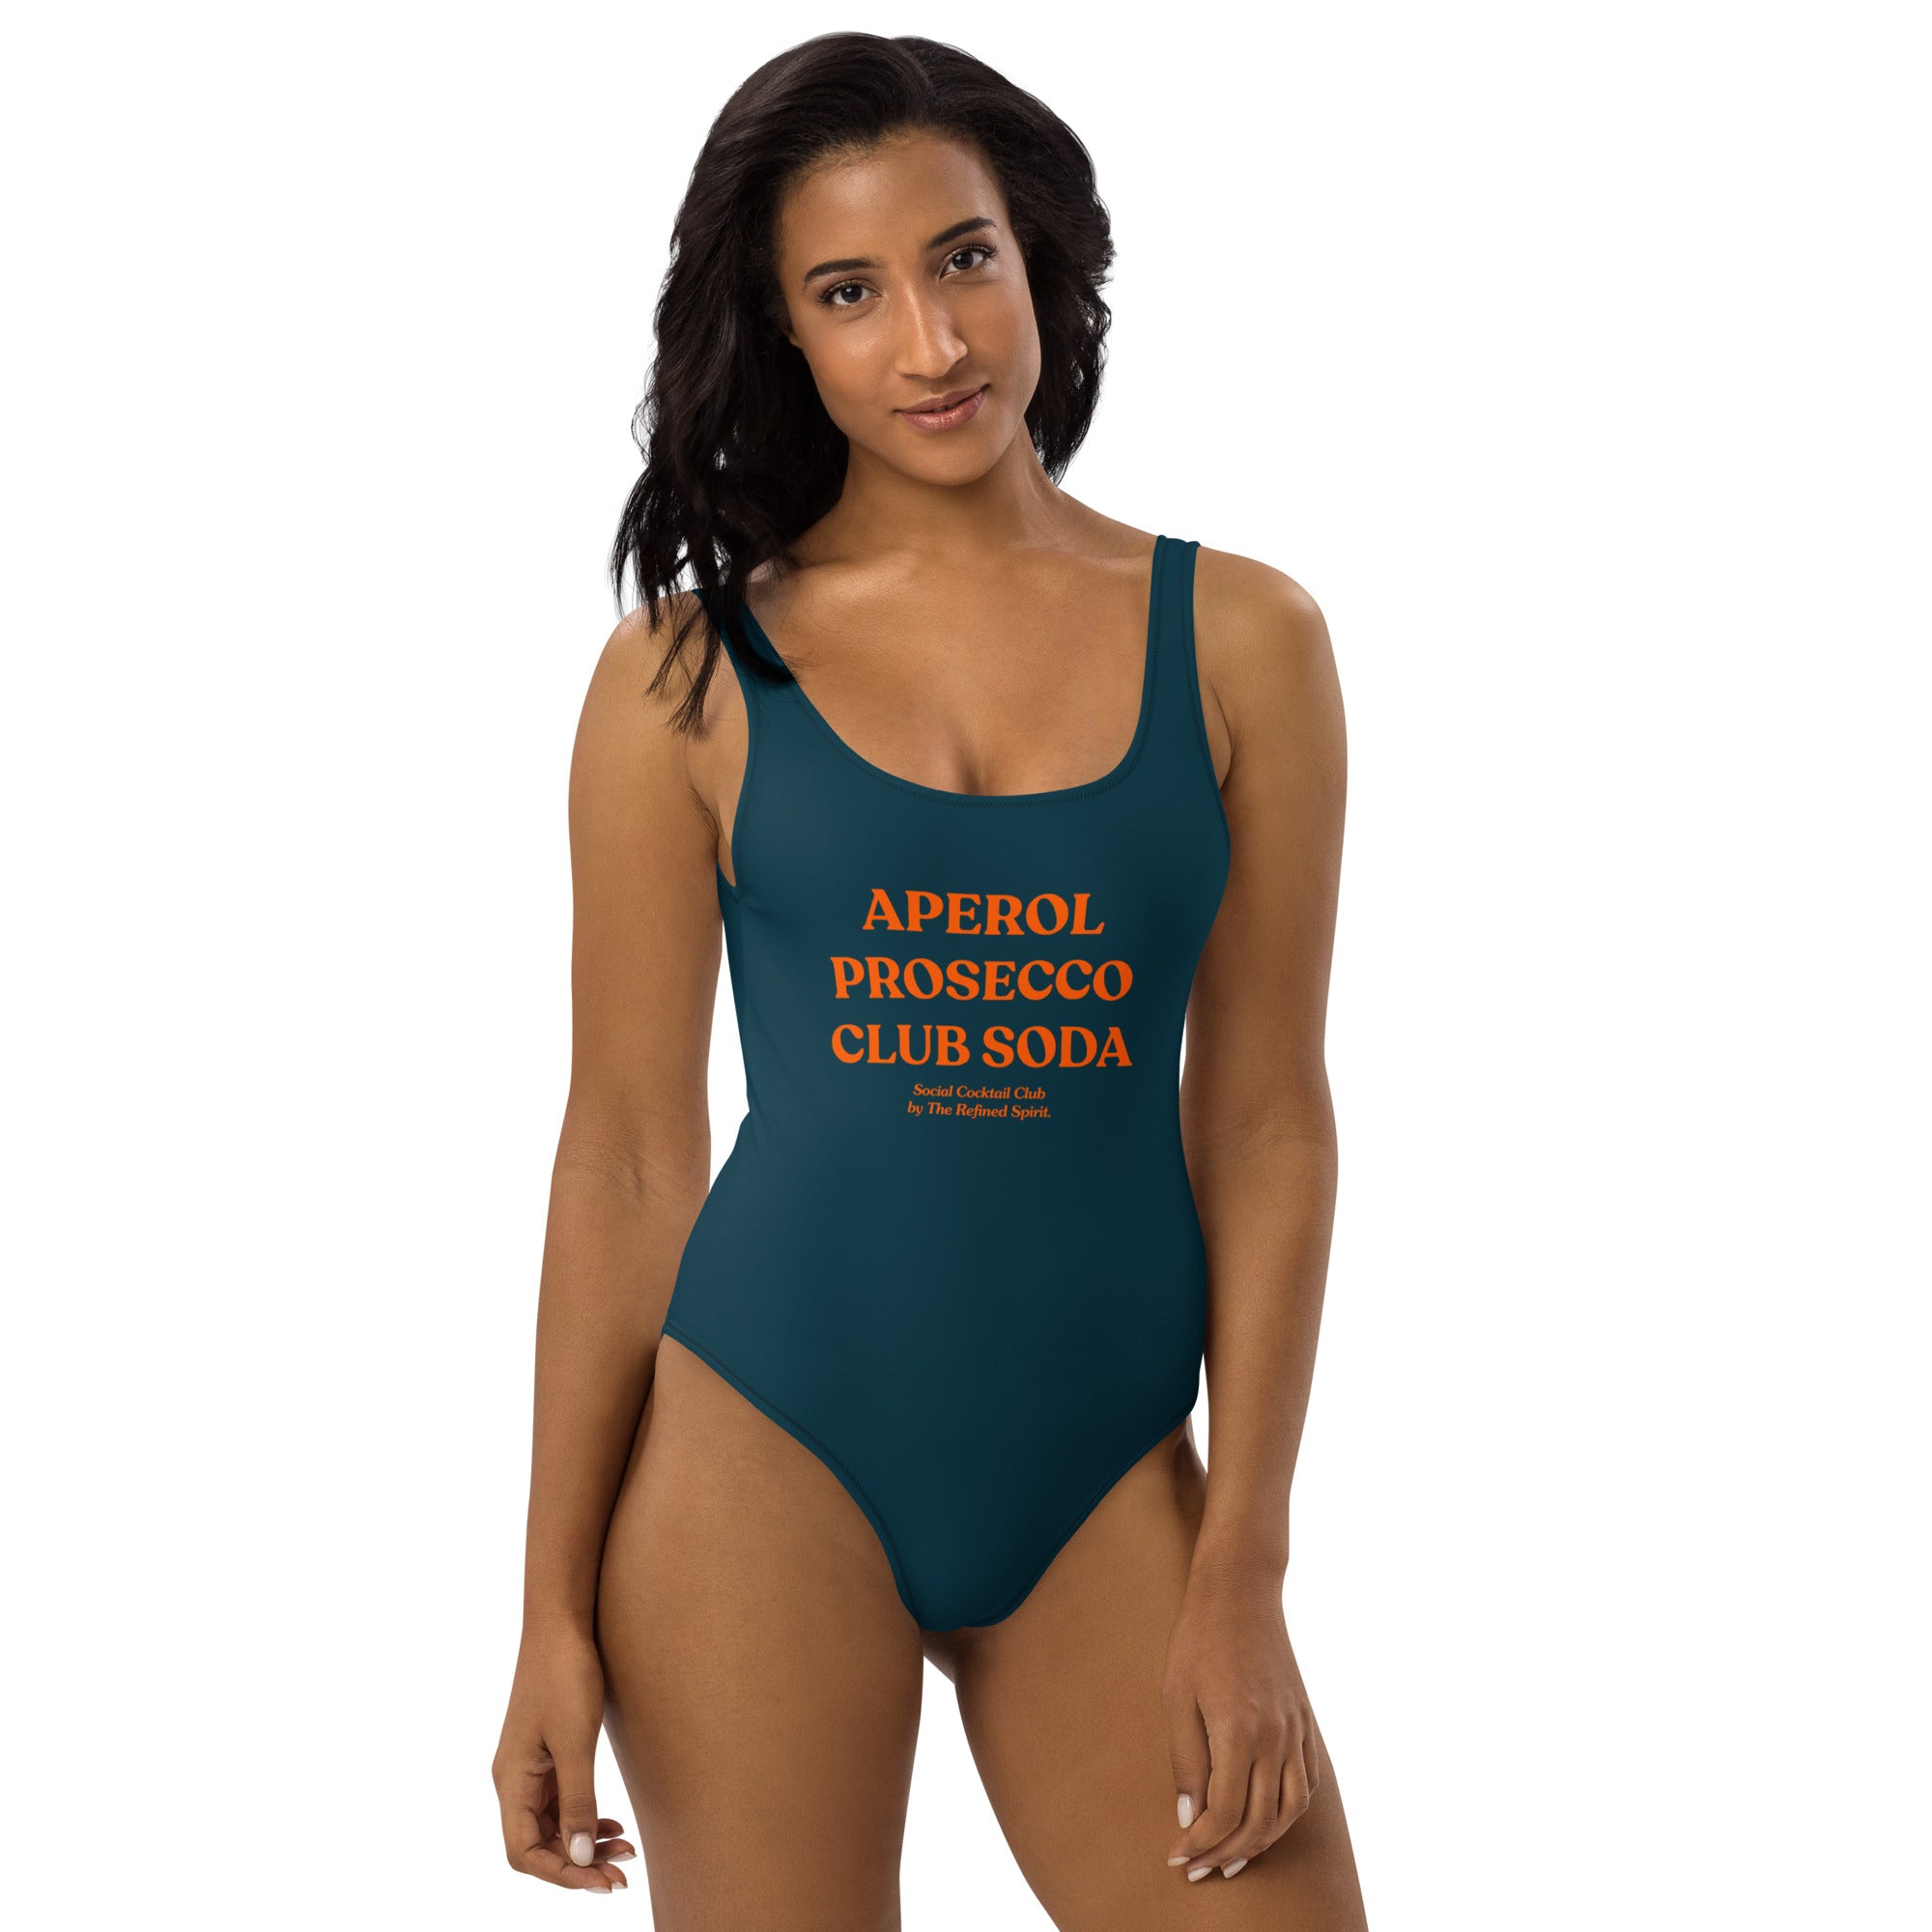 Aperol Prosecco Club Soda - Swimsuit